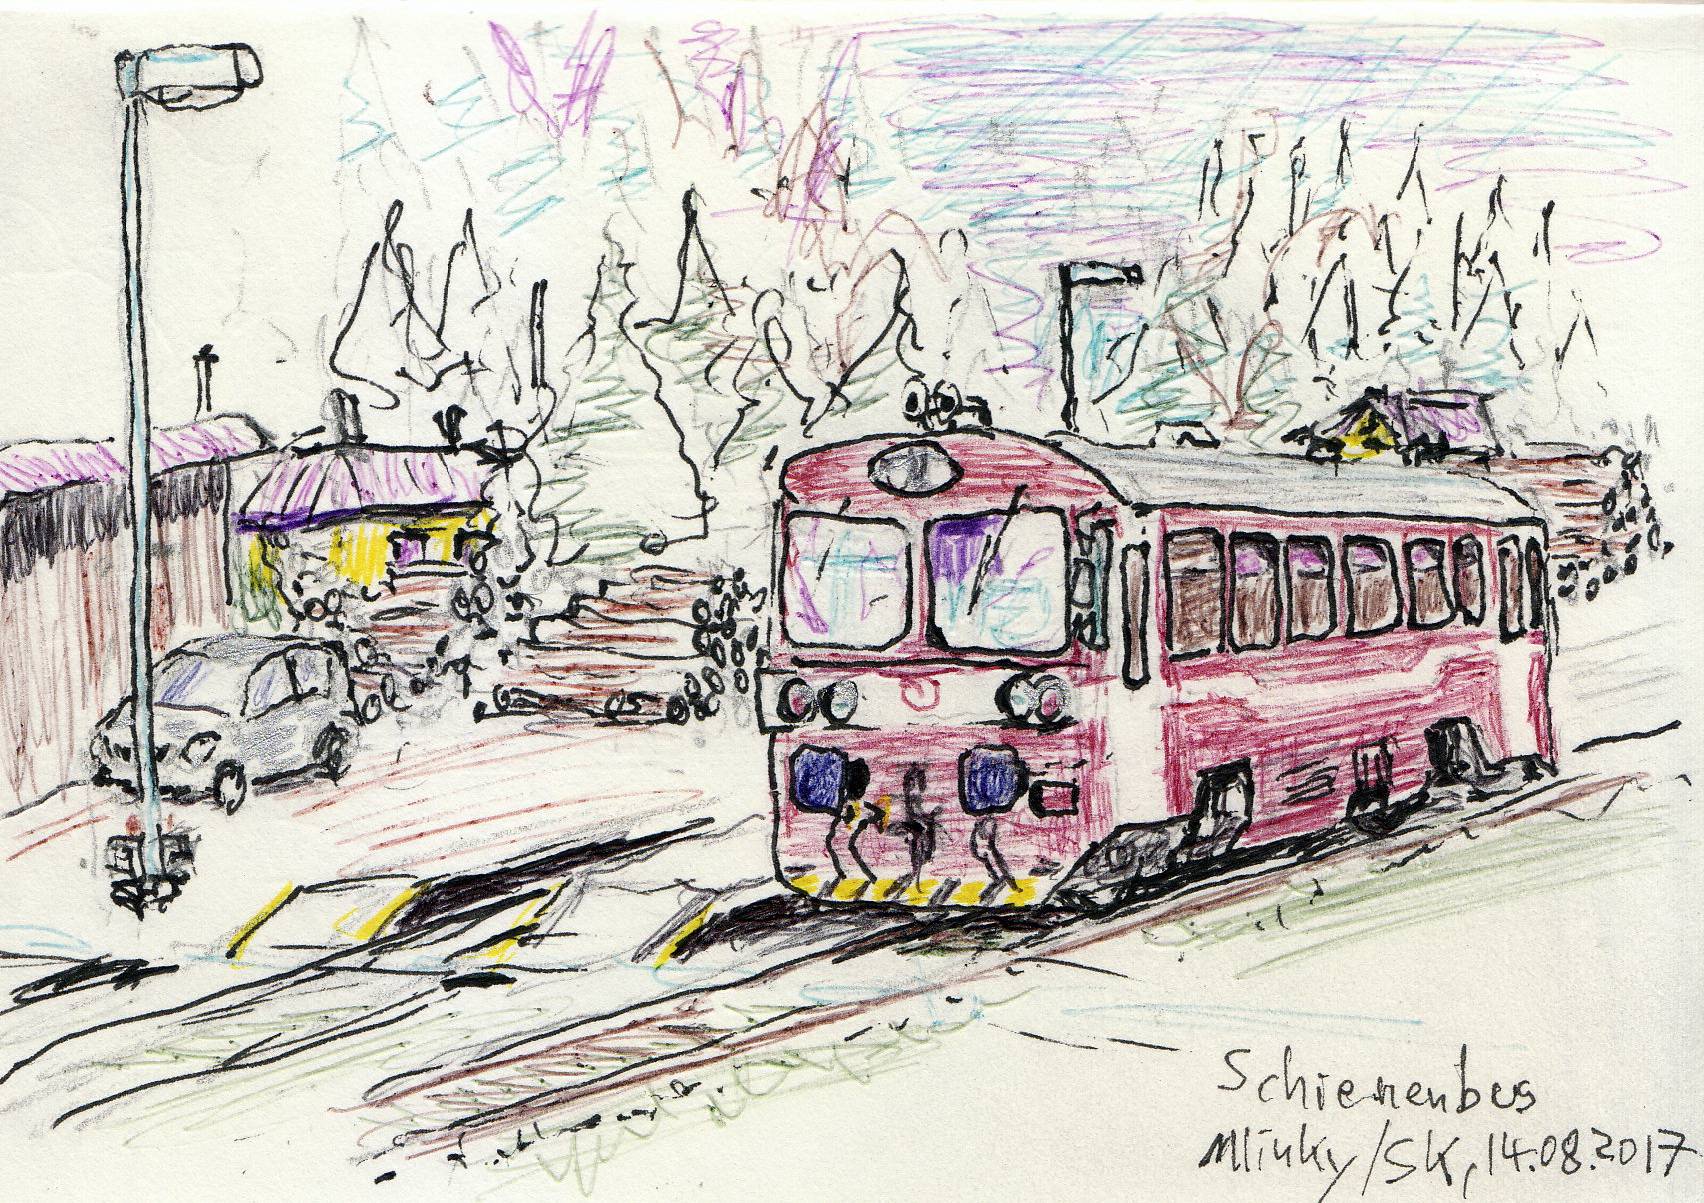 Zeichnung eines Schienenbusses.